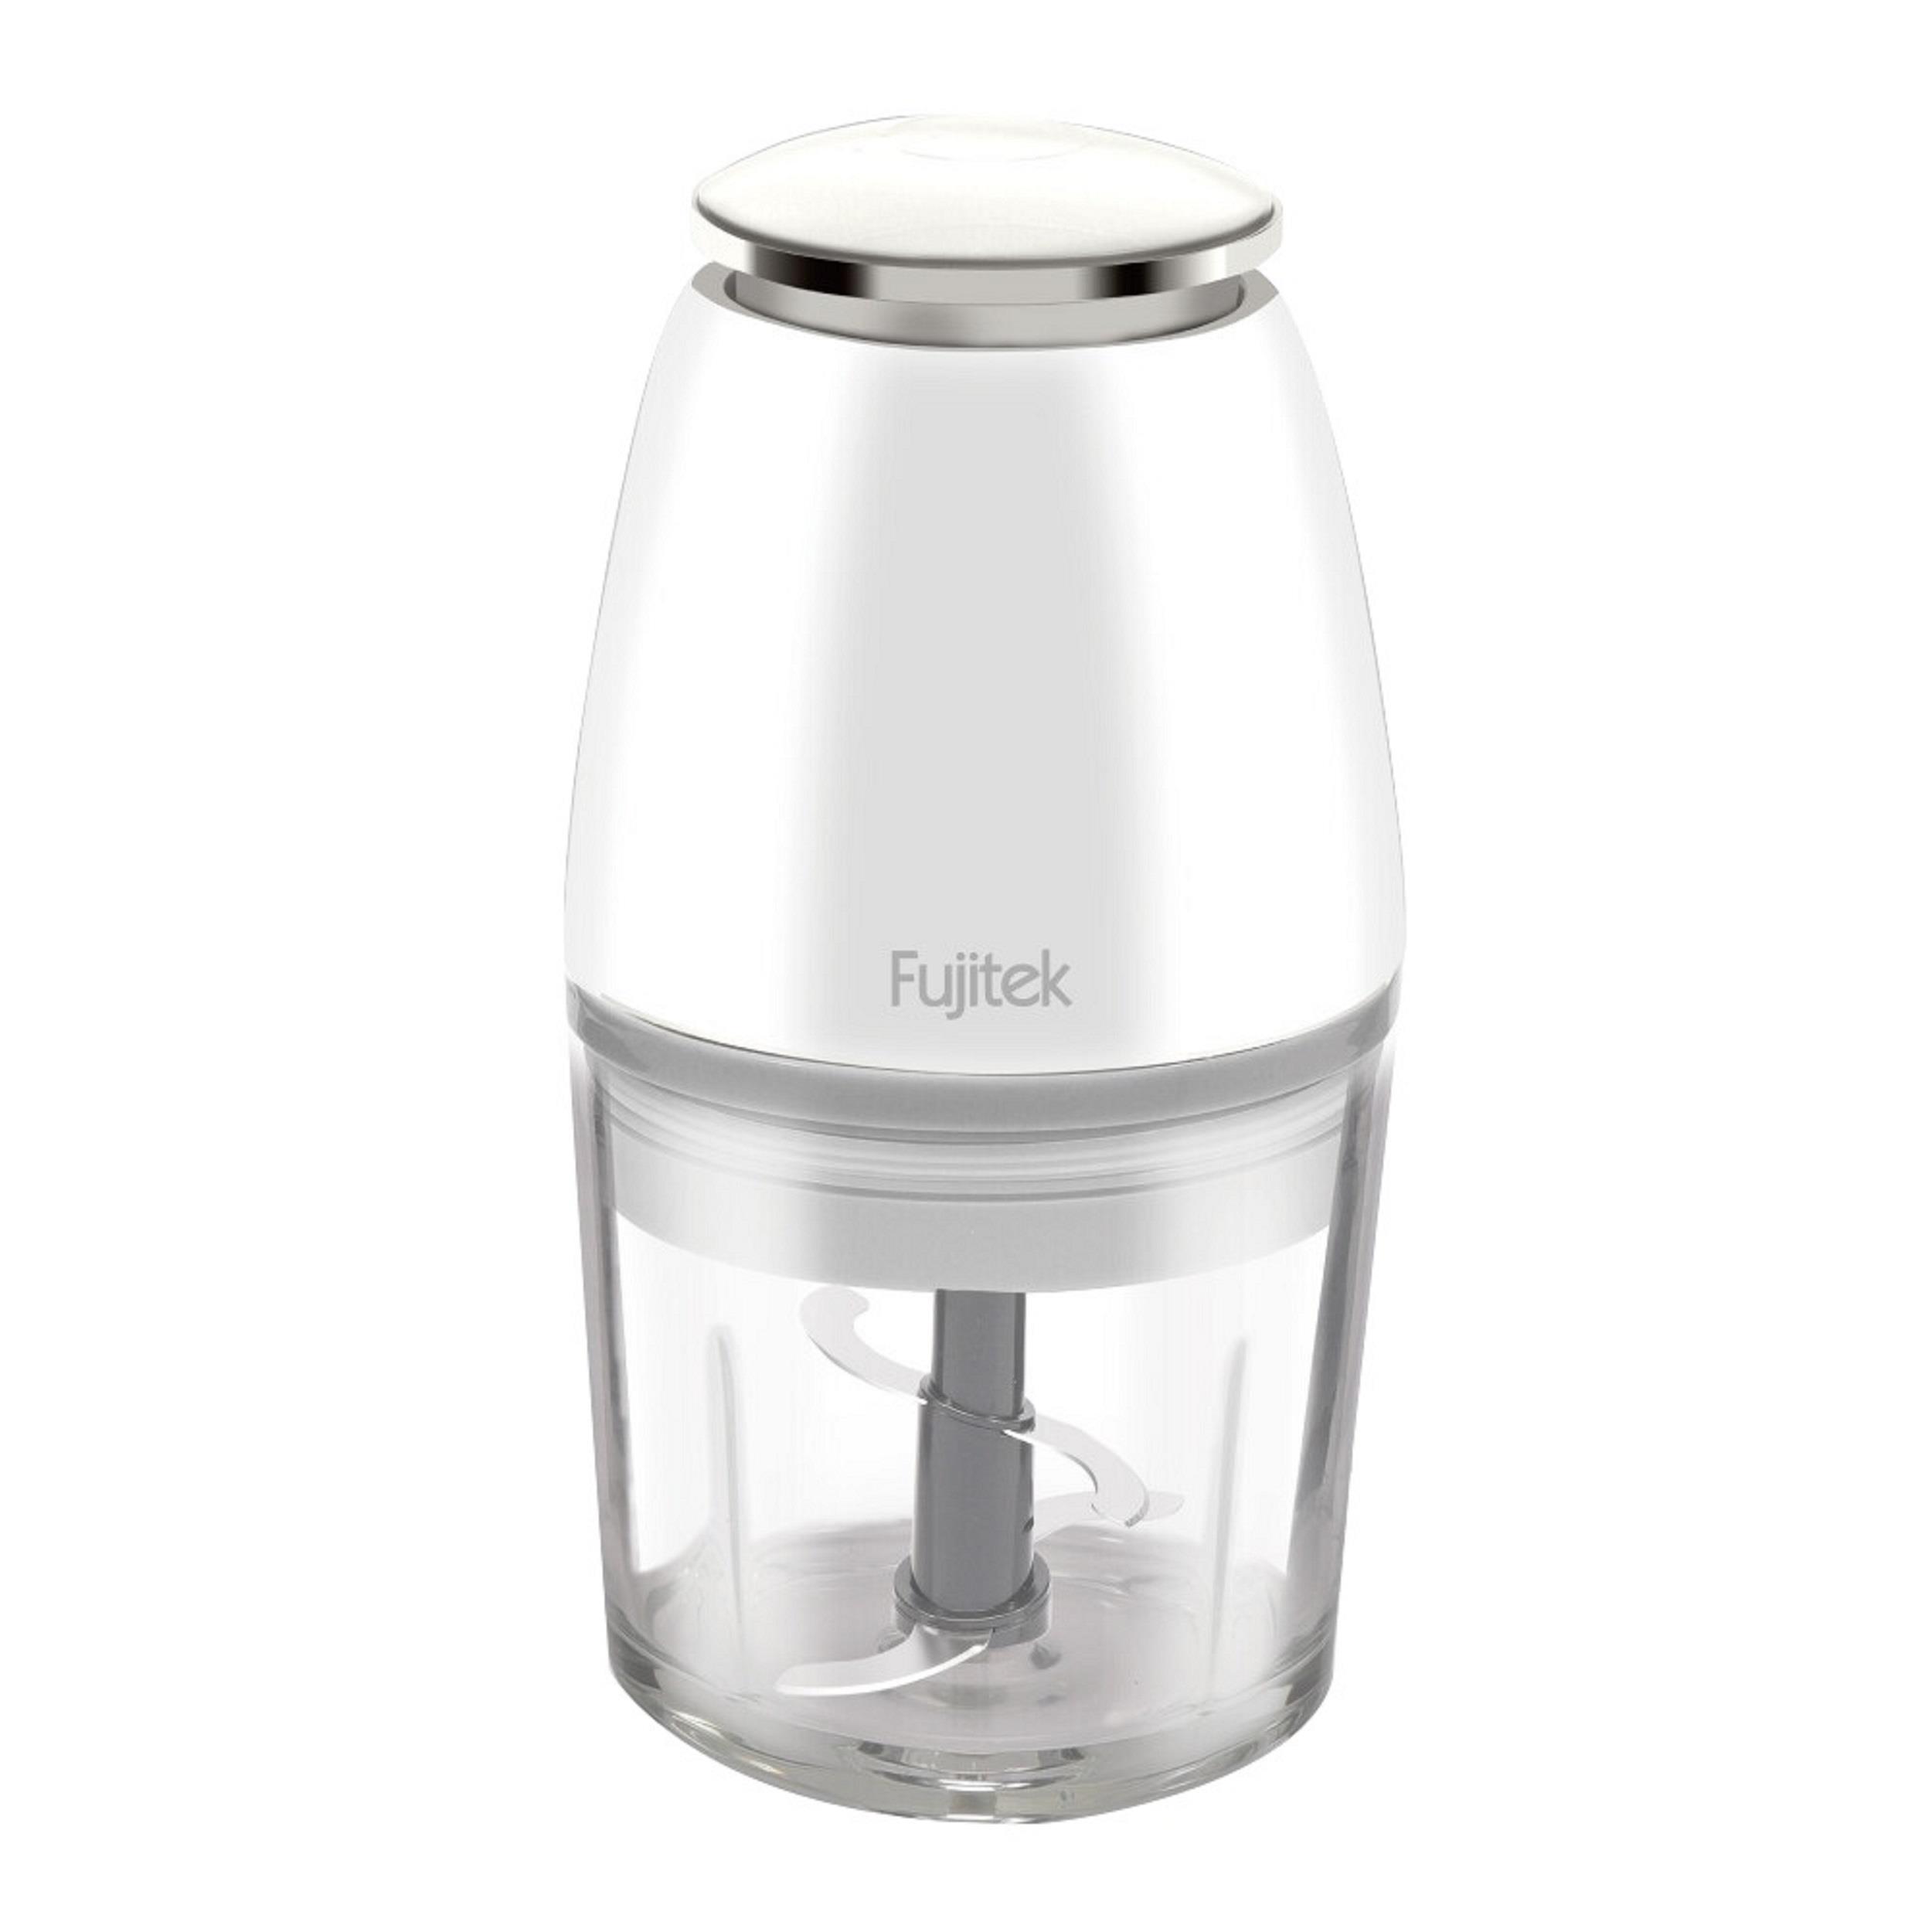 【Fujitek】富士電通切碎調理機(玻璃杯)((FTJ-FC101))